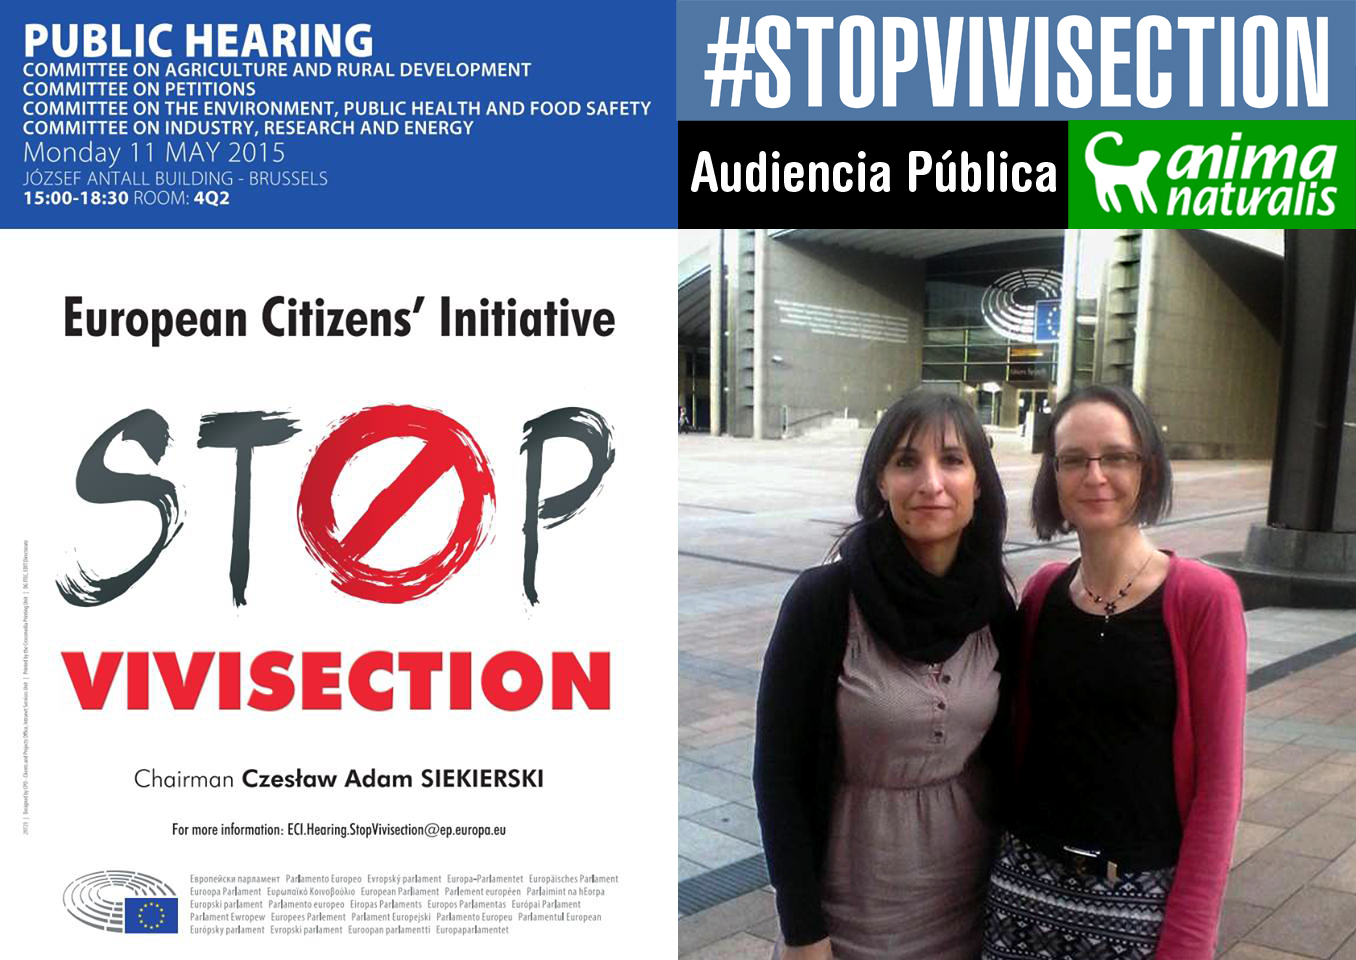 AnimaNaturalis asistió a la Audiencia Pública de Stop Vivisection en Bruselas